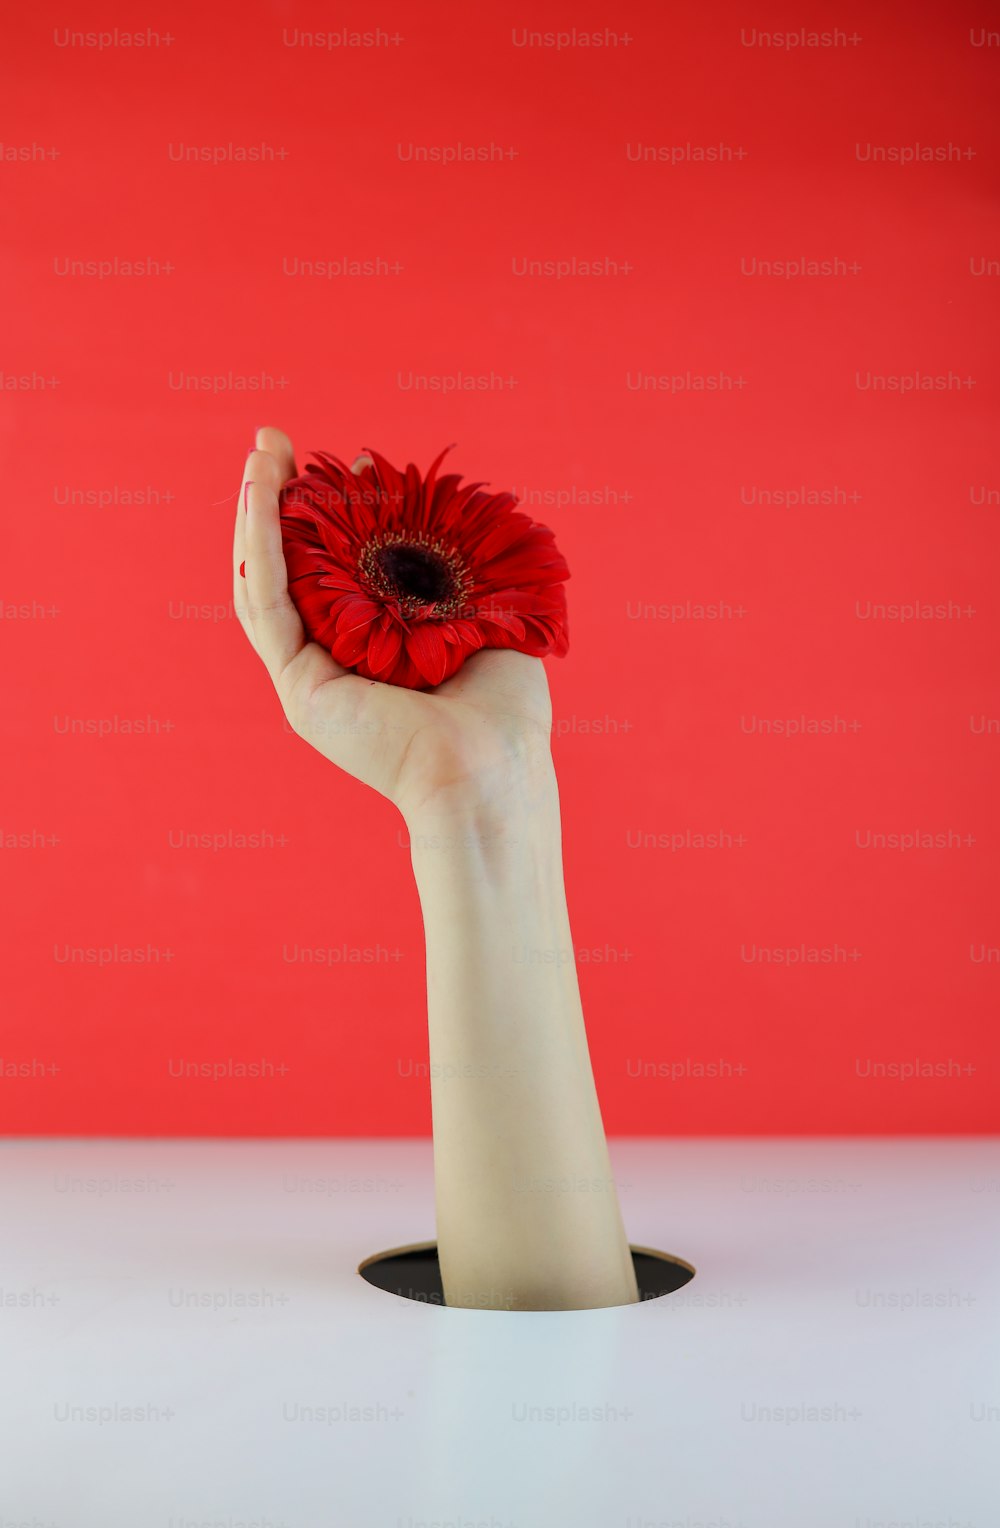 빨간 배경 앞에서 붉은 꽃을 들고 있�는 사람의 손